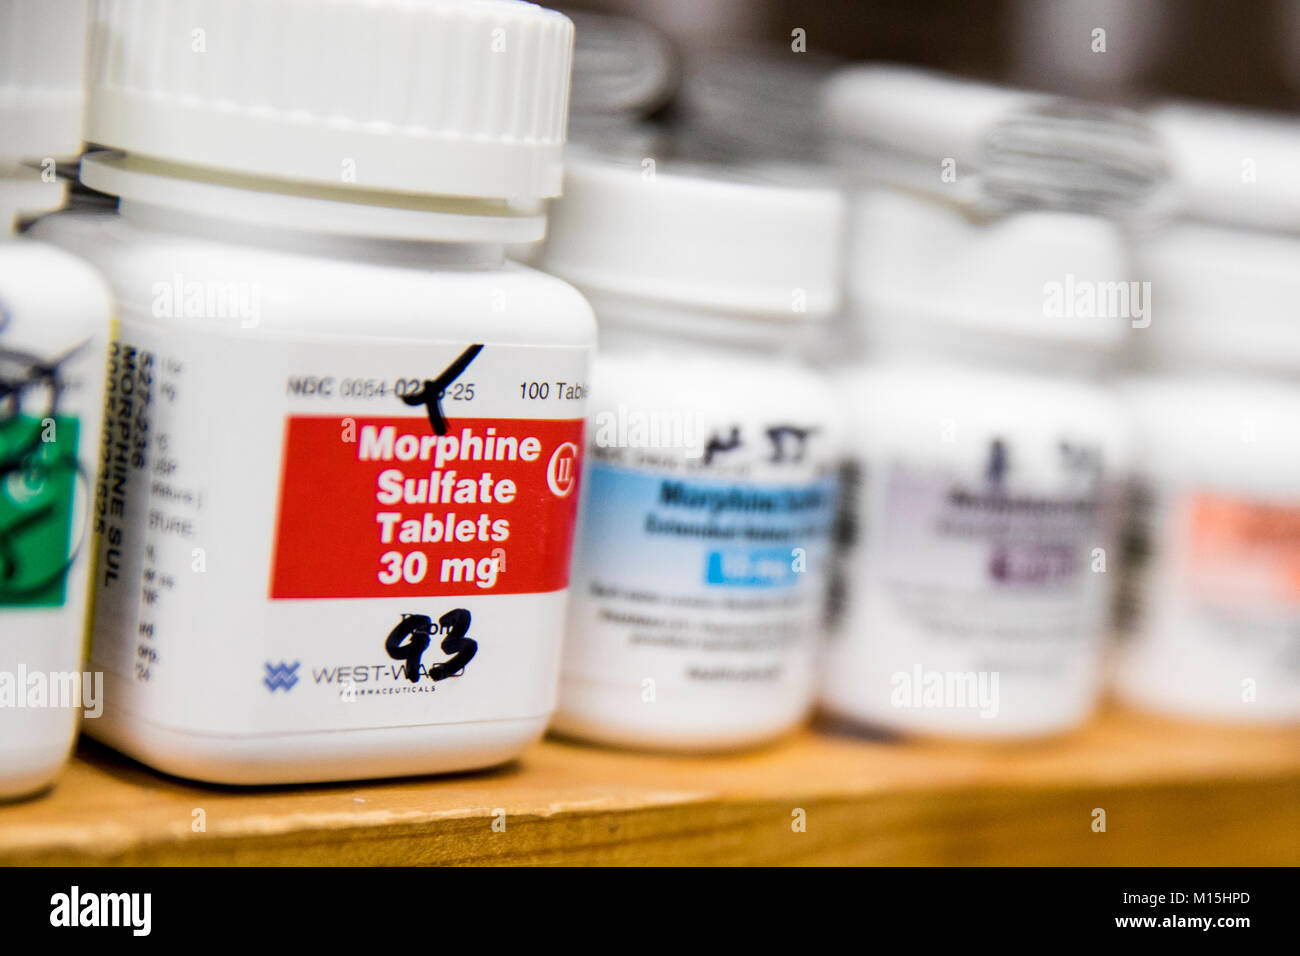 Morphine Sulfate bouteilles pharmaceutiques comme vu dans une pharmacie. Banque D'Images